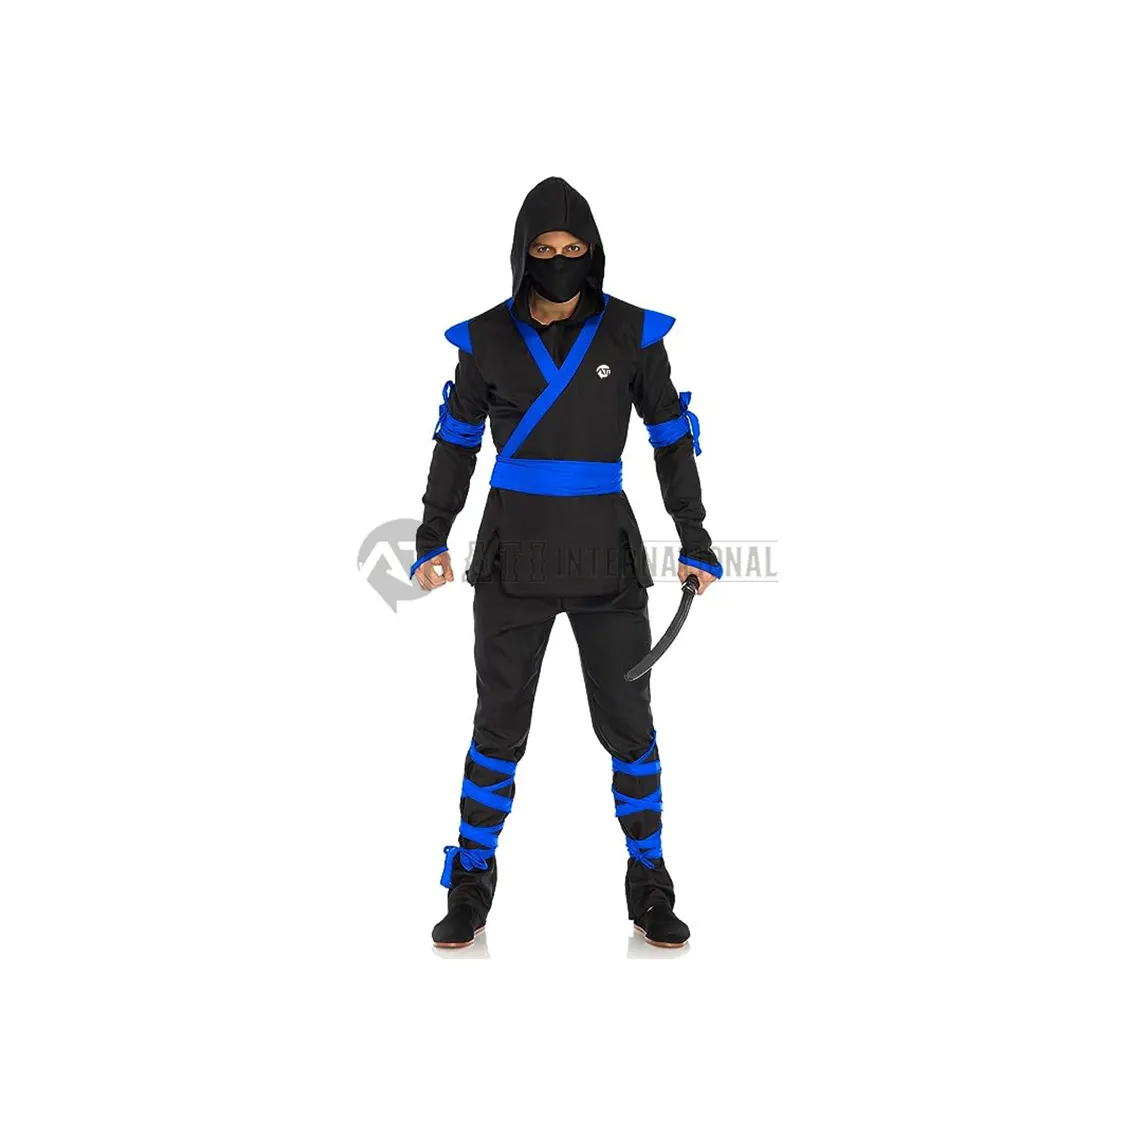 Costume de ninja pour homme avec chemise, pantalon, ceinture, masque facial, capuche Uniforme de ninja noir/bleu professionnel pour adultes et enfants